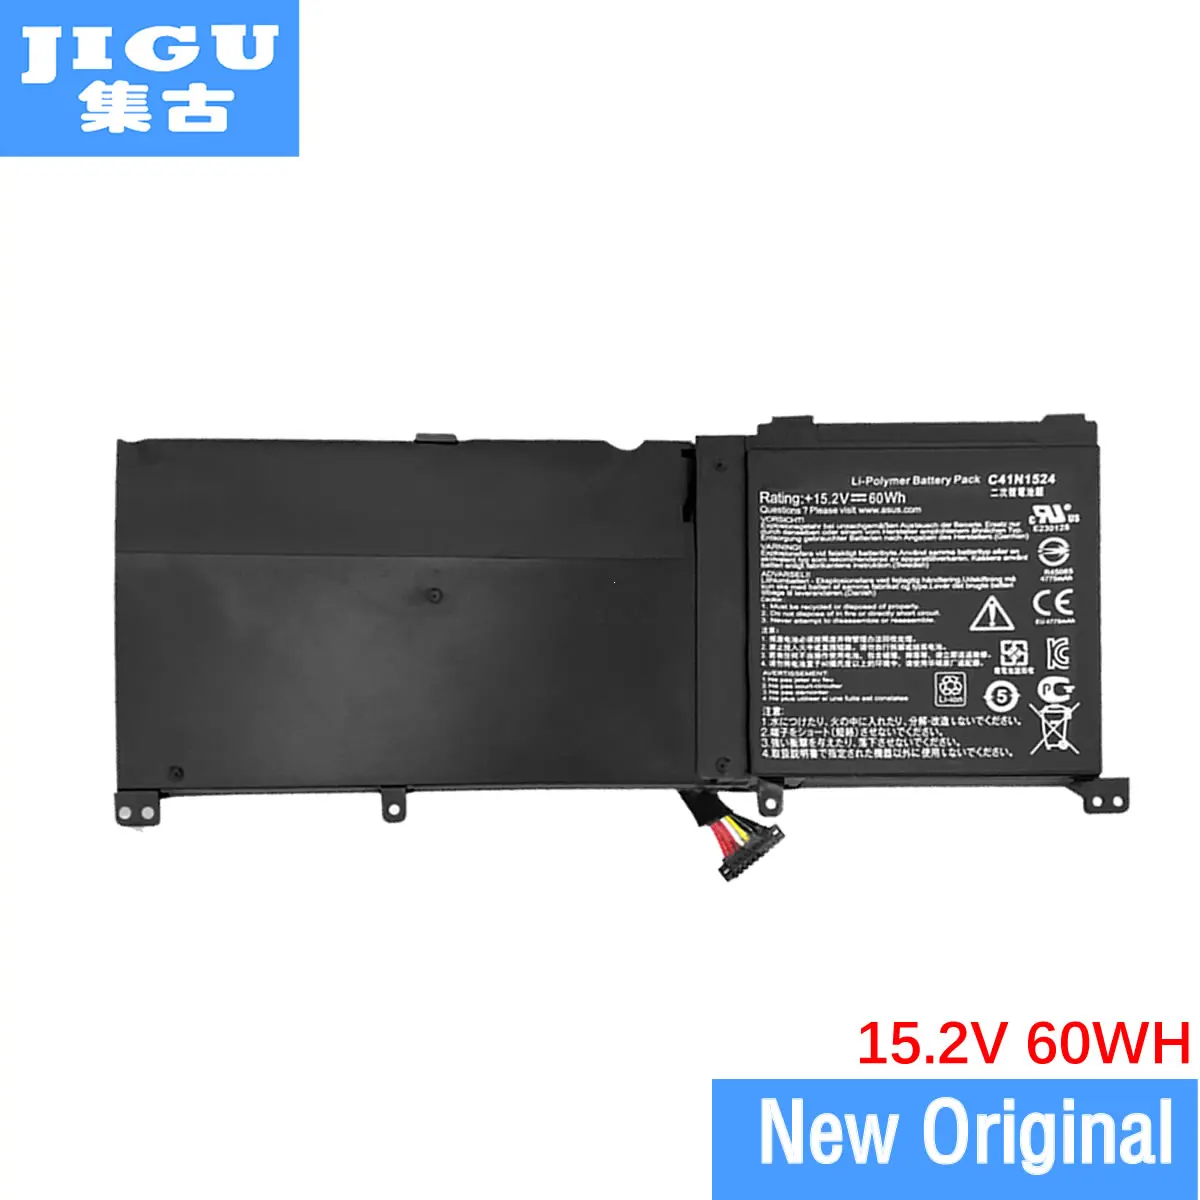 

JIGU 15.2V 60WH Original Laptop Battery For Asus C41N1524 N501VW-2B UX501JW